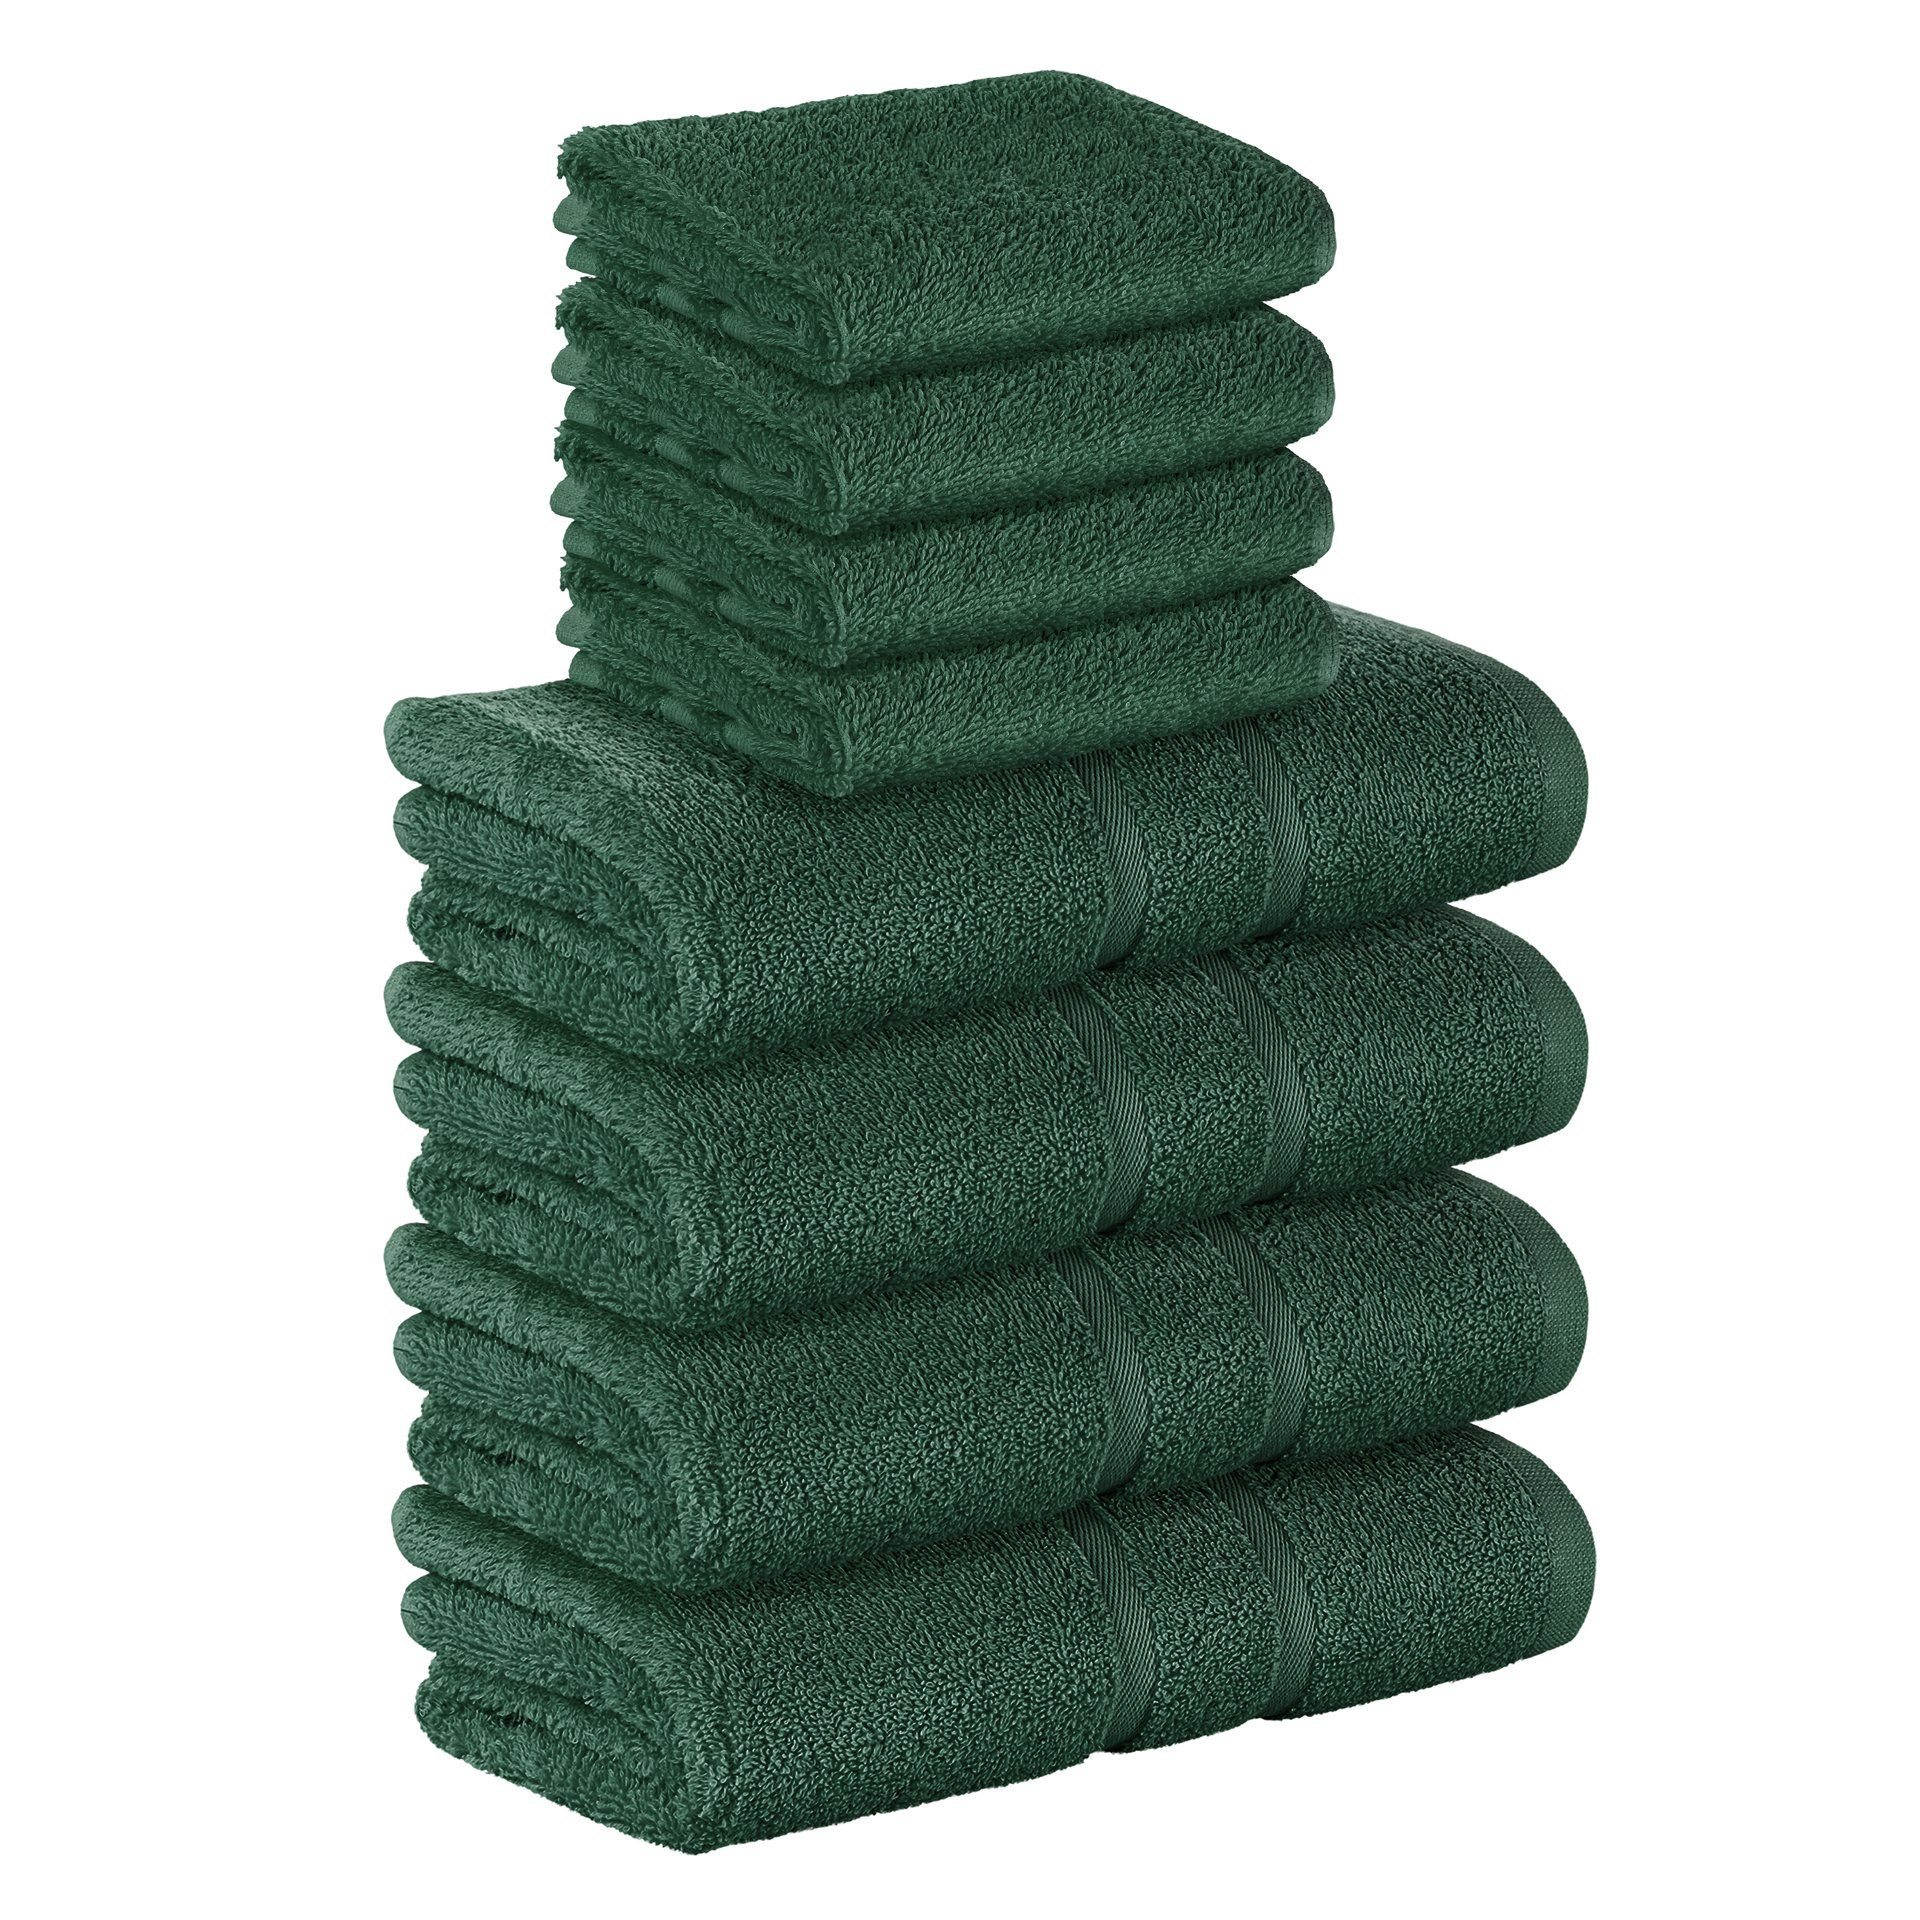 StickandShine Handtuch Set 4x Gästehandtuch 4x Handtücher als SET in verschiedenen Farben (8 Teilig) 100% Baumwolle 500 GSM Frottee 8er Handtuch Pack, 100% Baumwolle 500 GSM Dunkelgrün